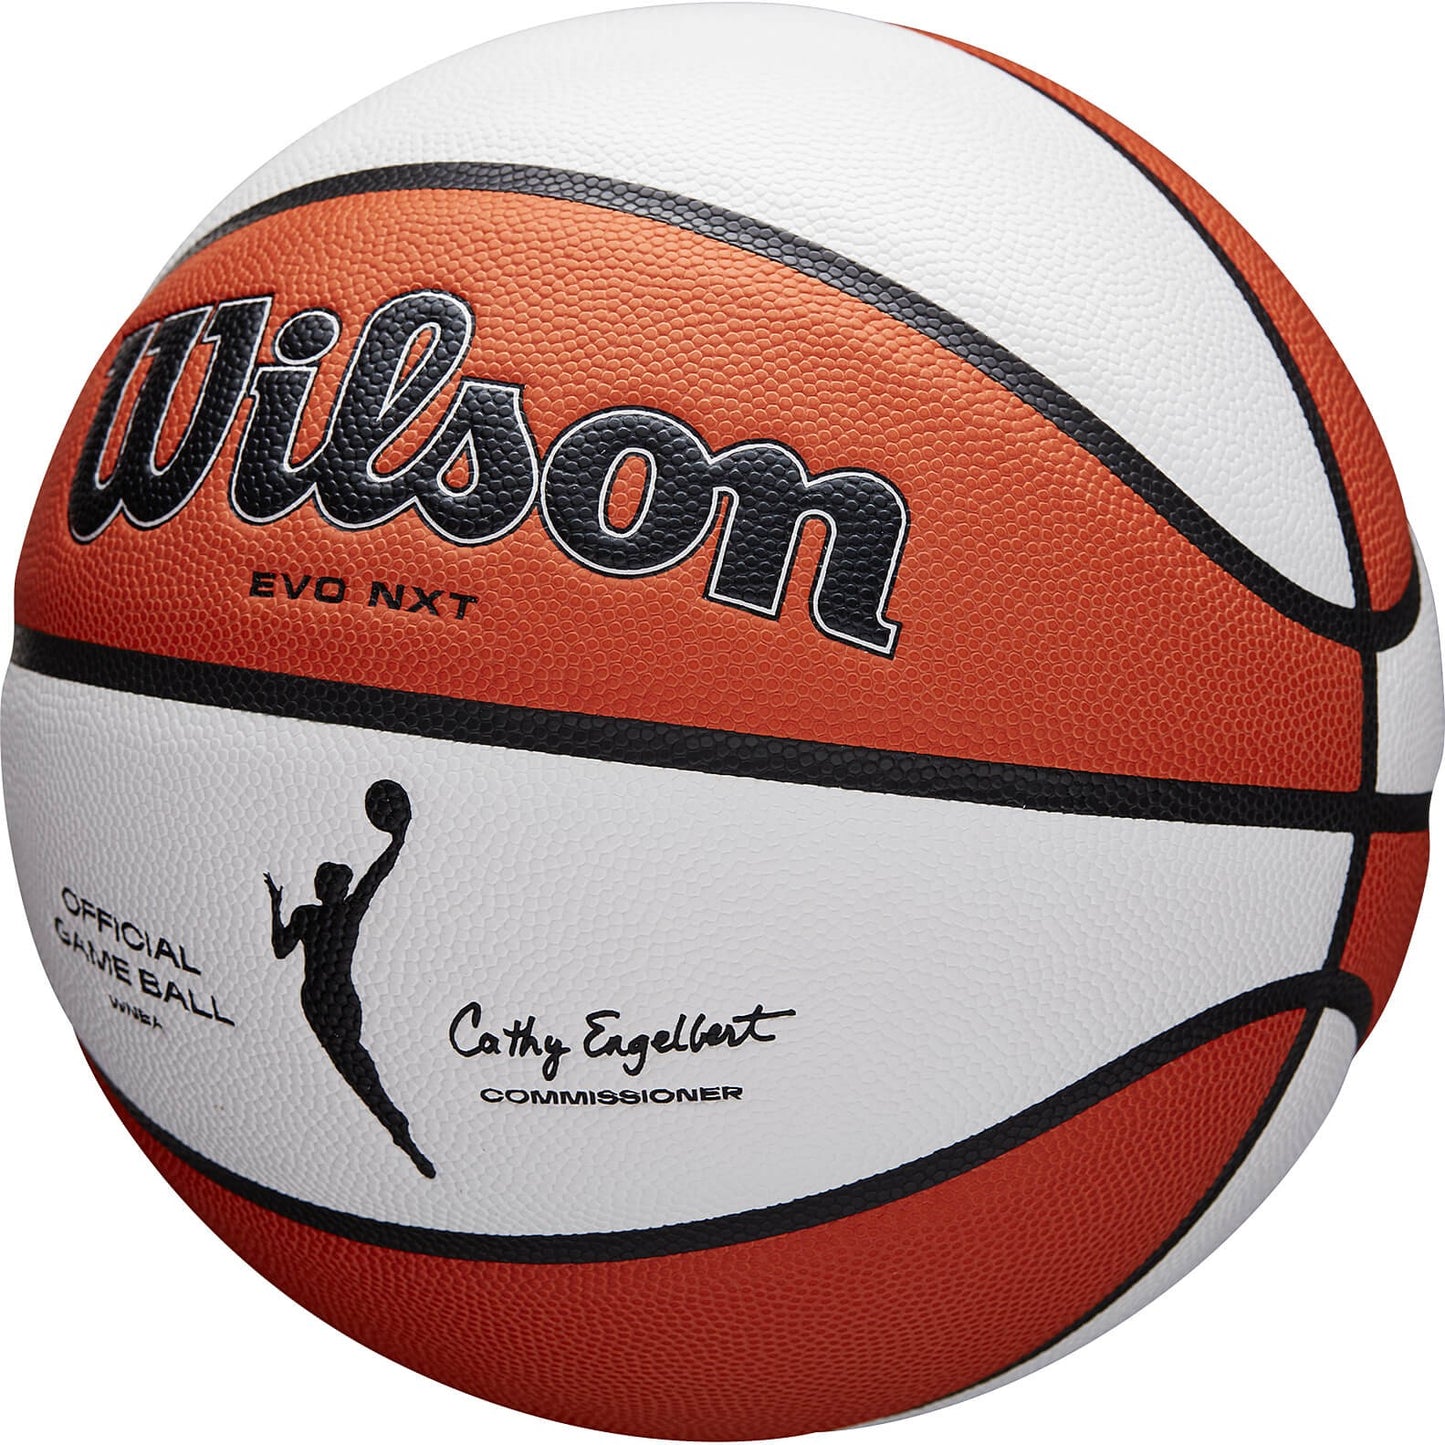 Wilson Wnba Official Game Ball Bskt (Sz. 6)